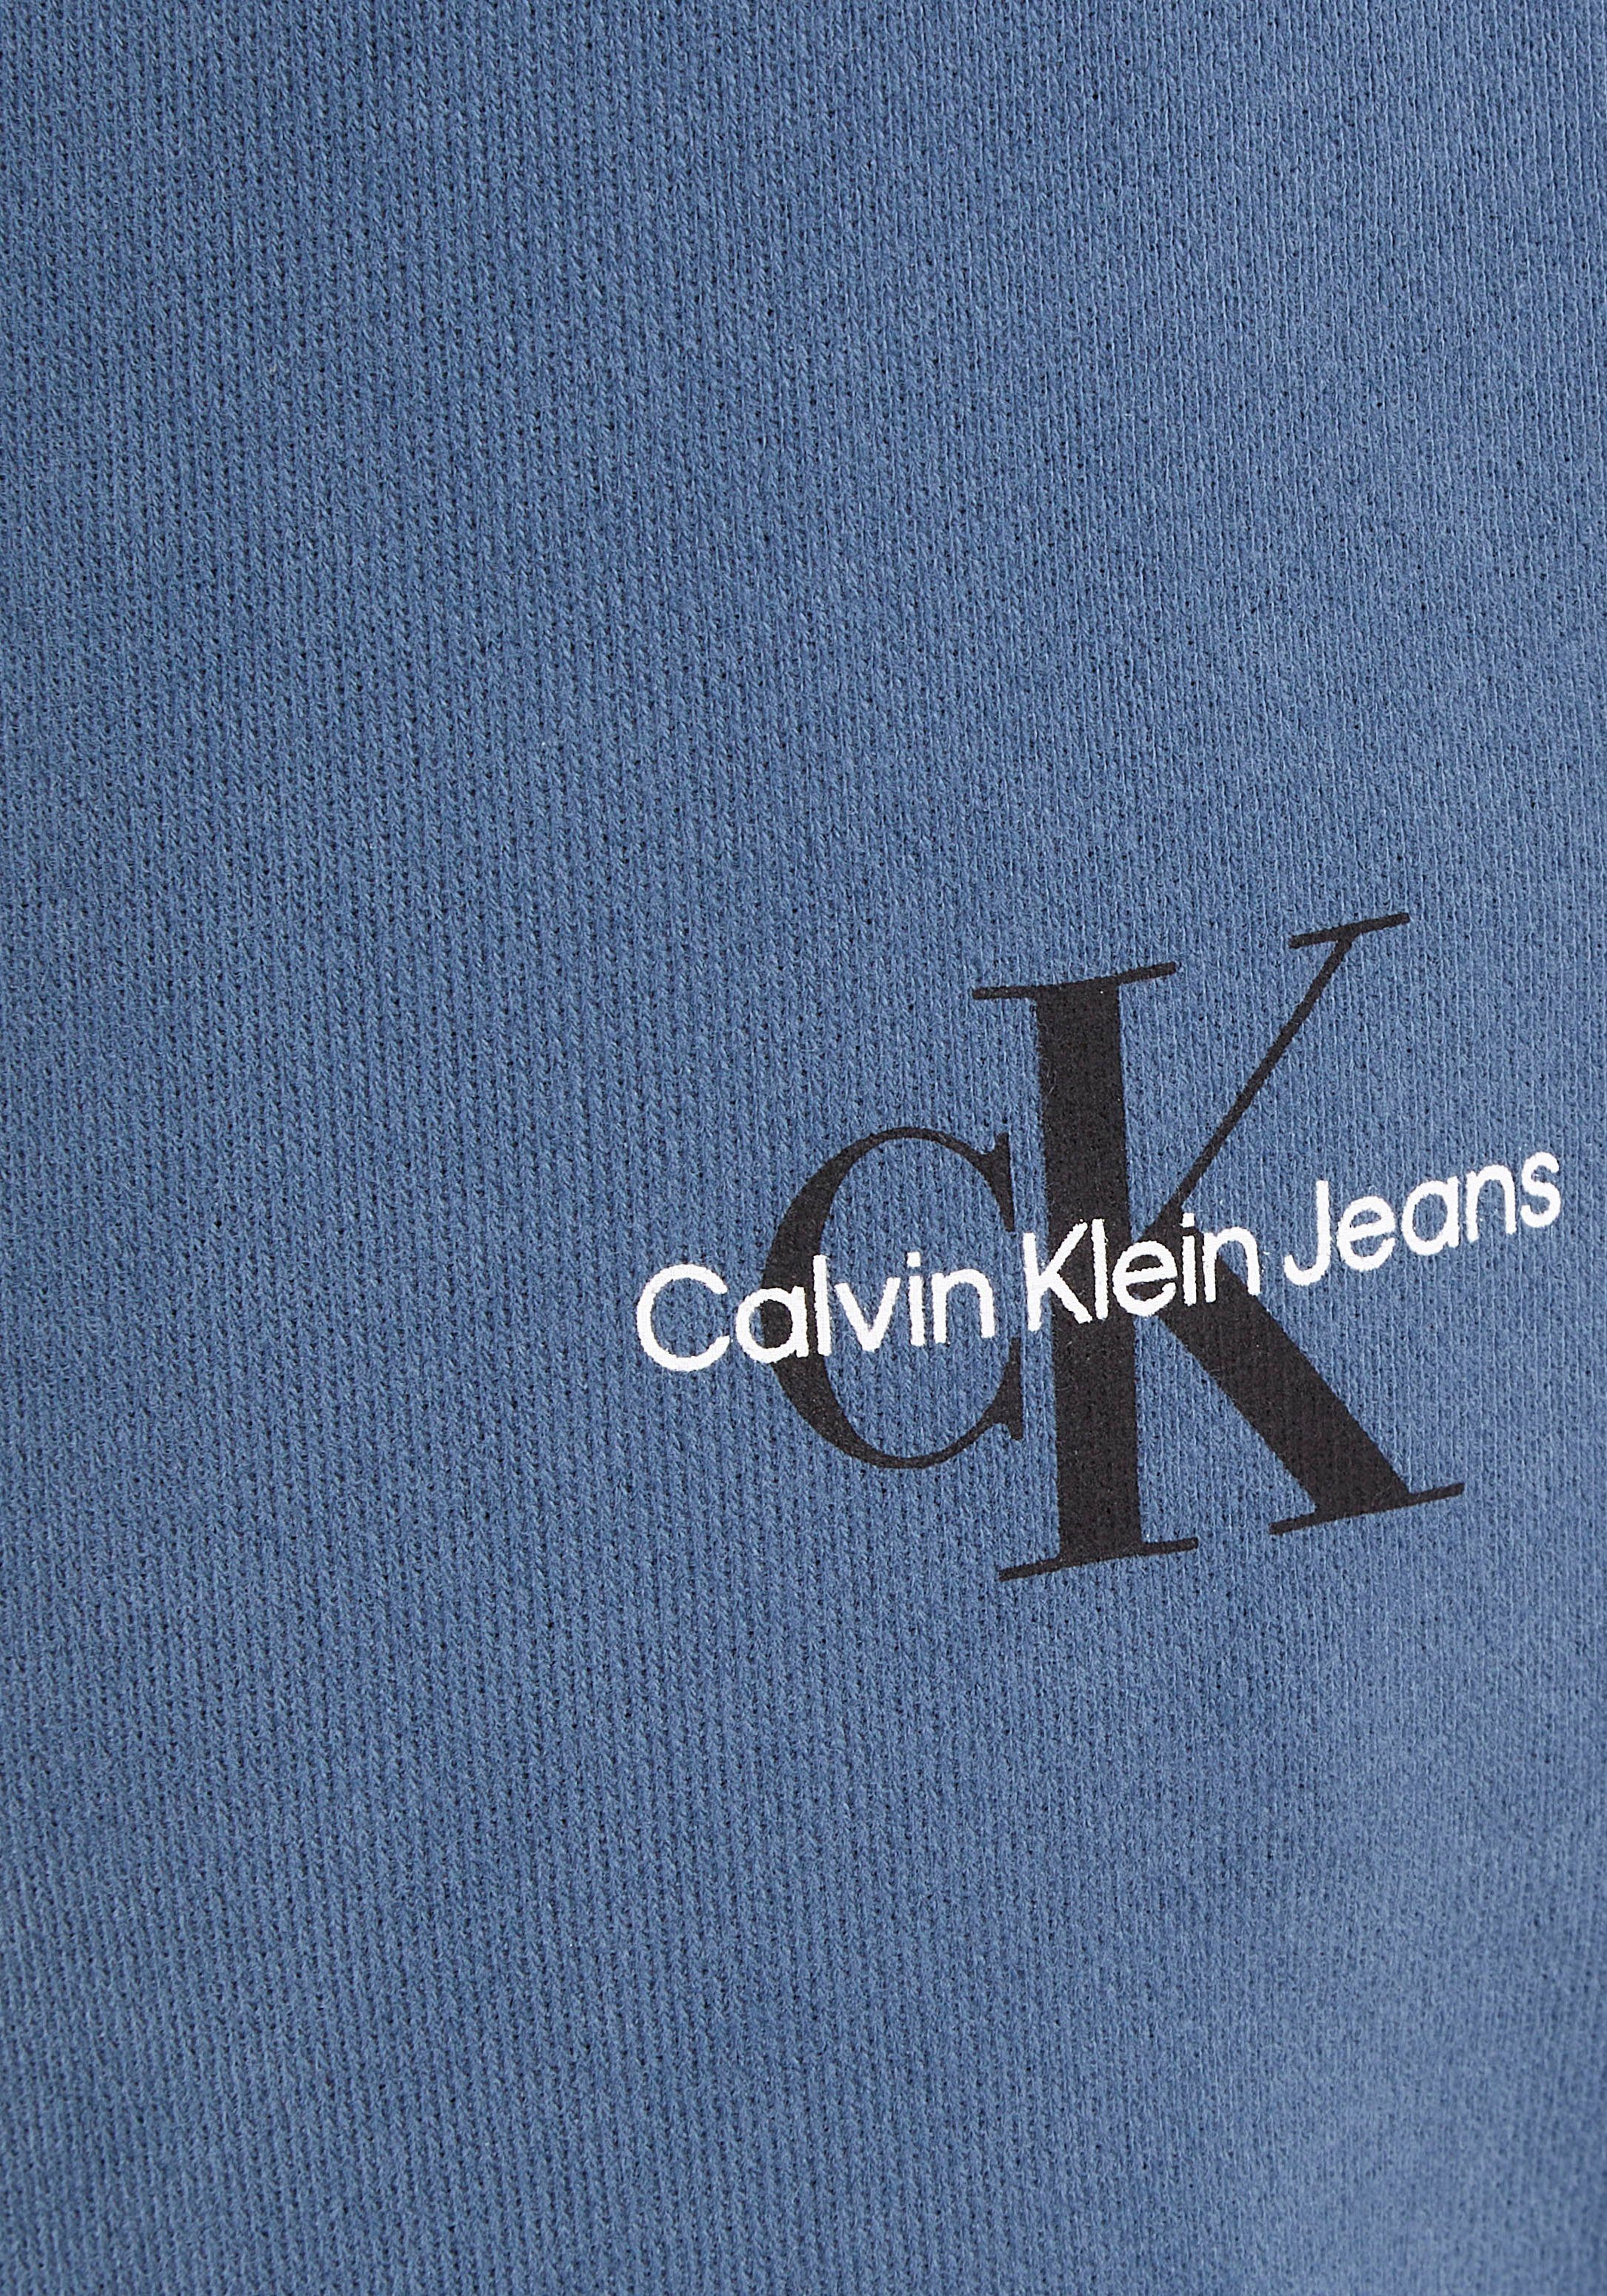 Klein Aegean MONOLOGO HWK Sea MICRO PANT Jeans Bein Jogginghose dem Klein mit Logoschriftzug auf Calvin Calvin